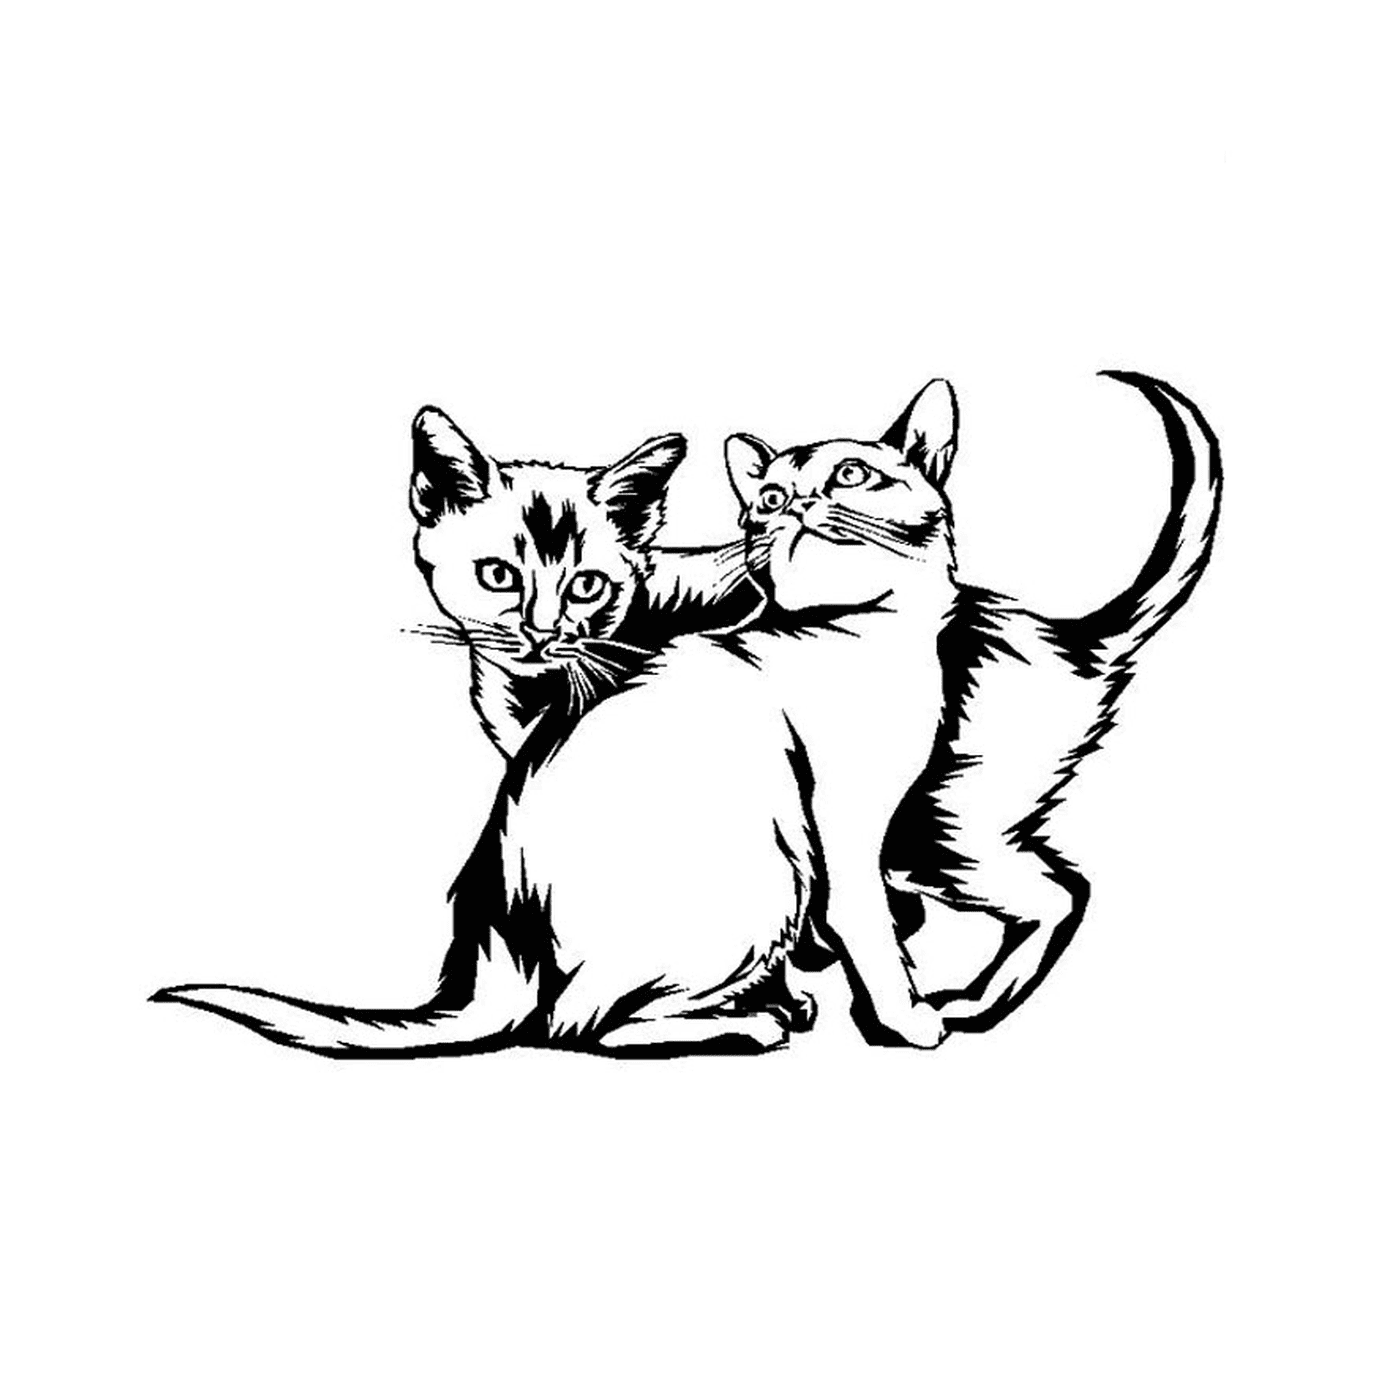  Dois gatinhos brincam juntos 